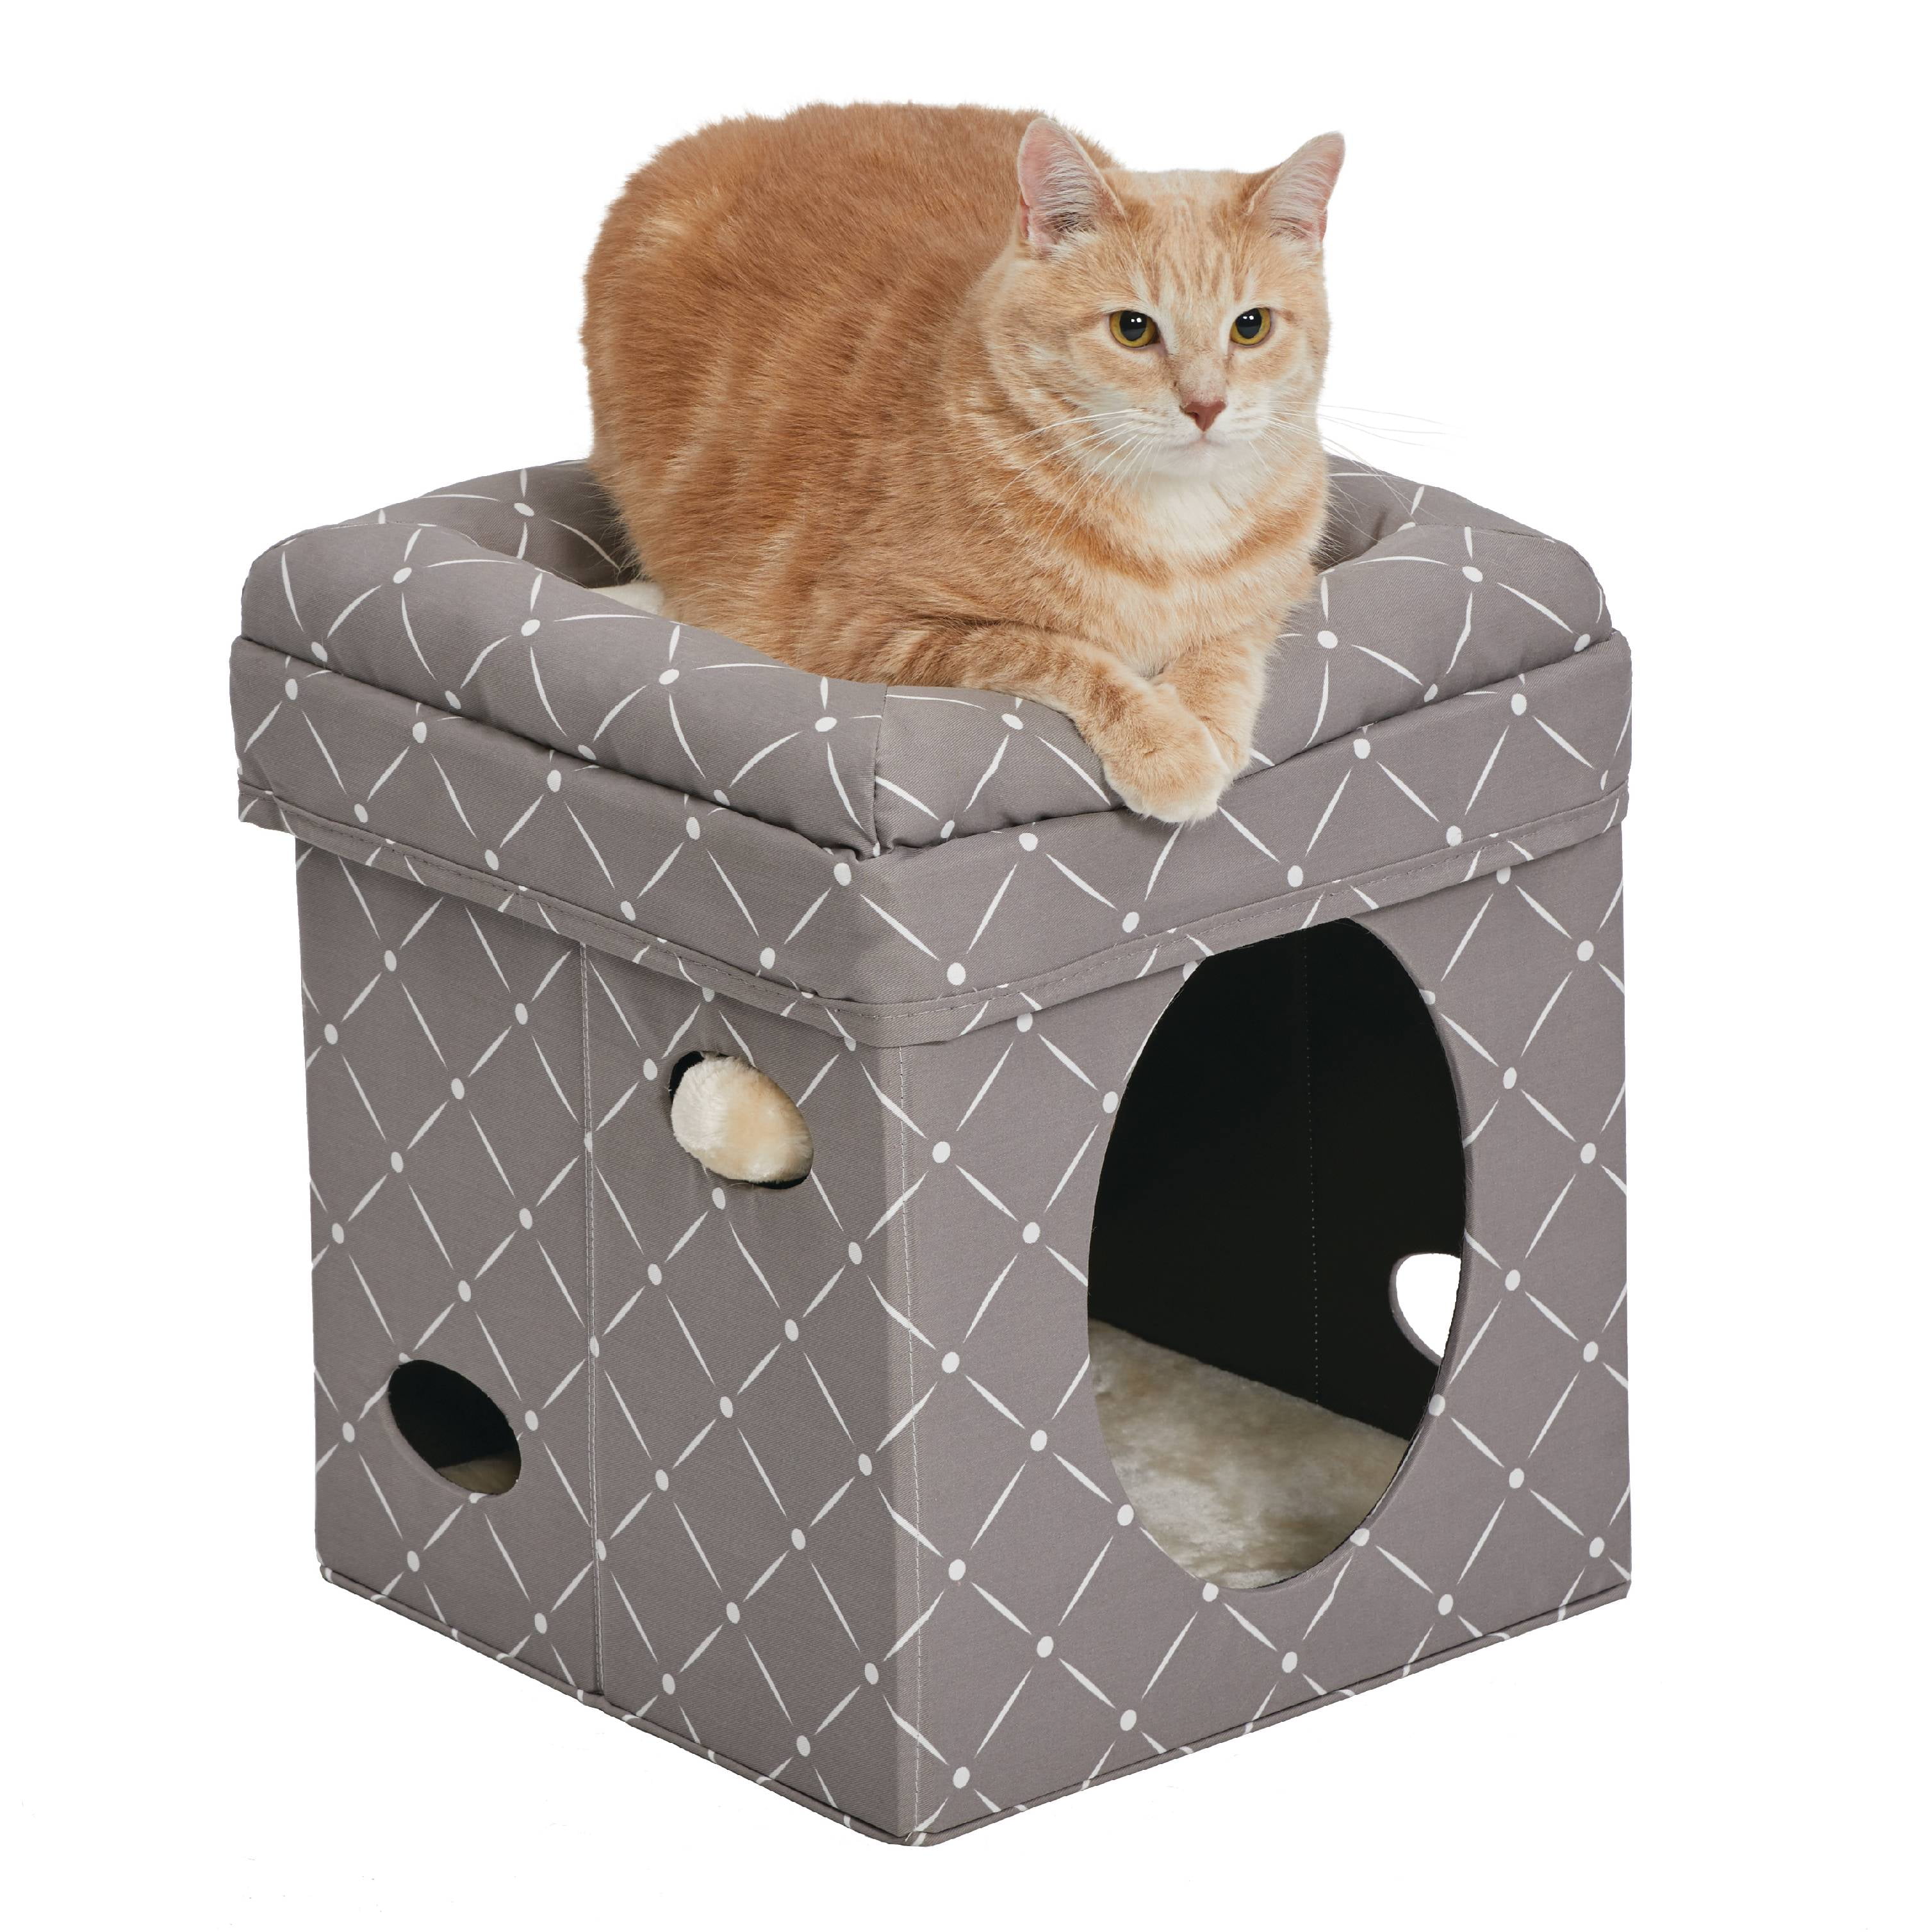 Mw02306 Curious Cube Cat Bed - Mushroom